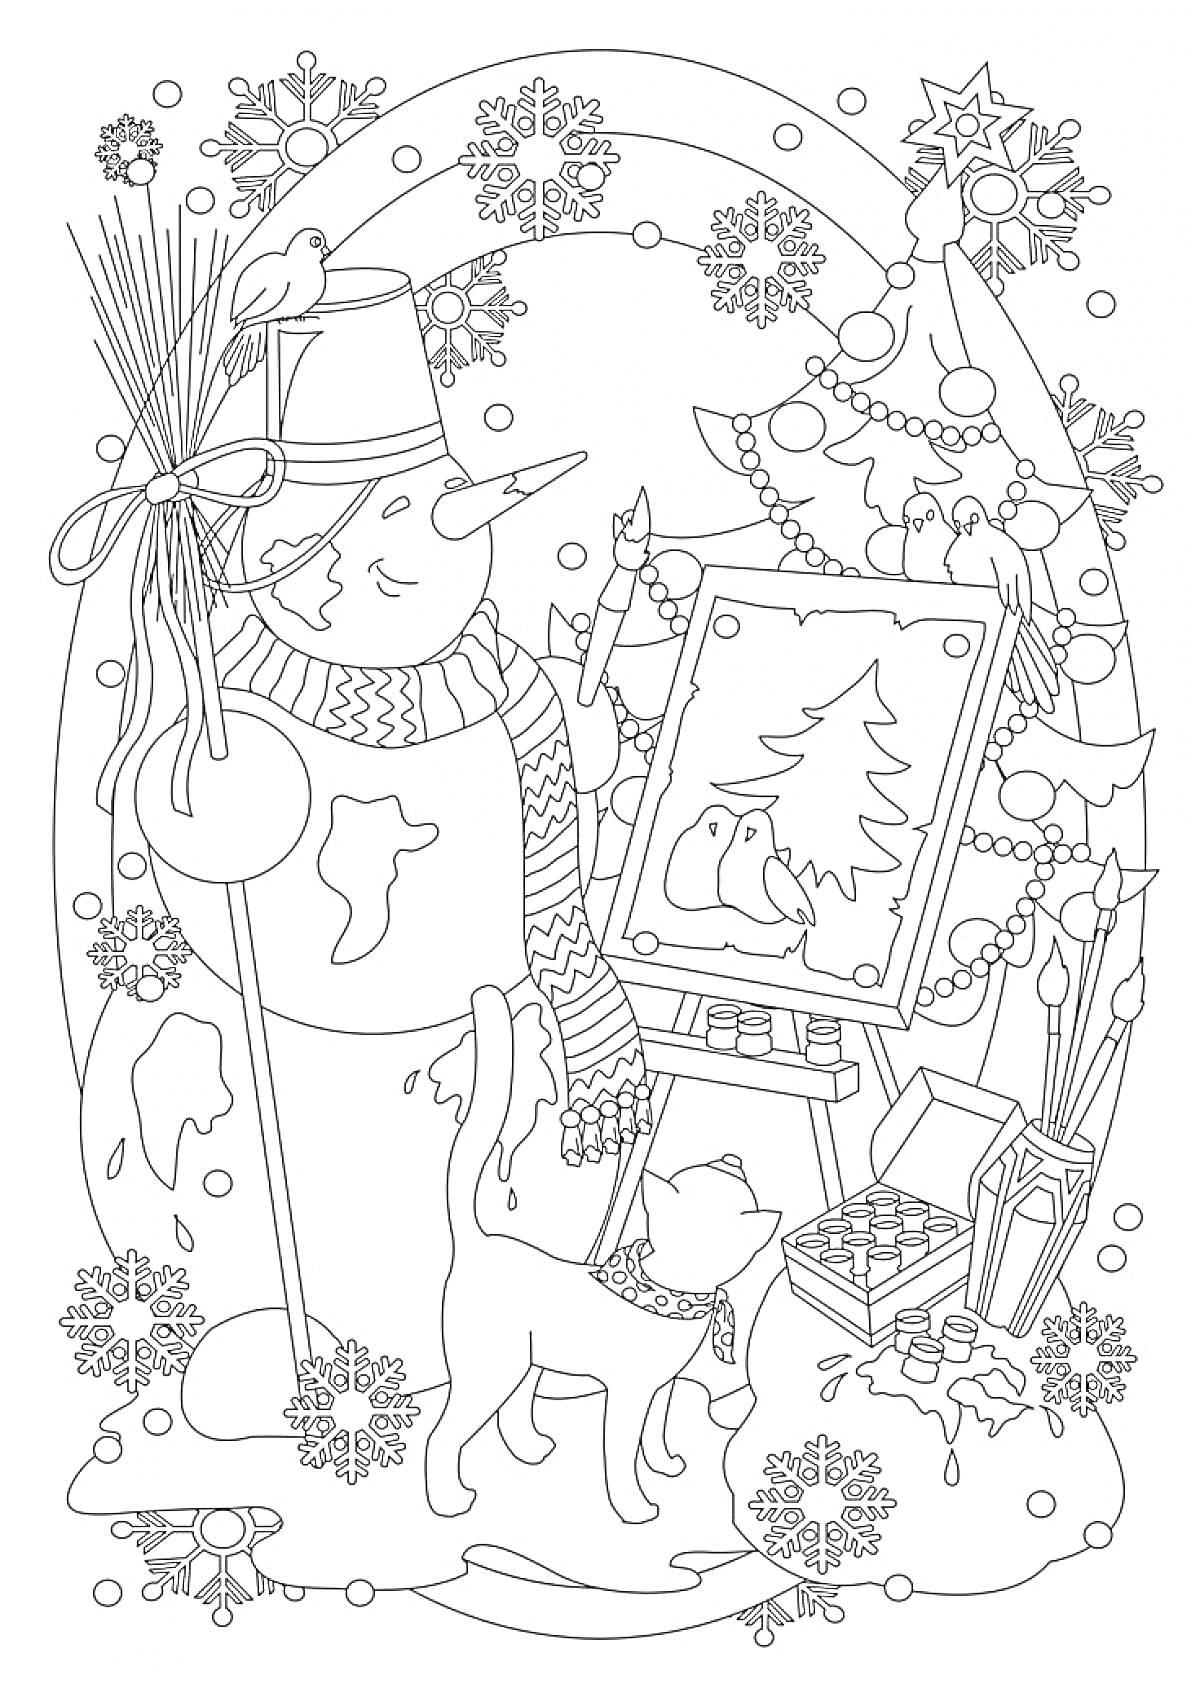 Раскраска Снеговик с кошкой у мольберта, рисует картину зимнего пейзажа с елкой и птицами, на фоне украшенной новогодней елки и подарков, с гирляндой и снежинками